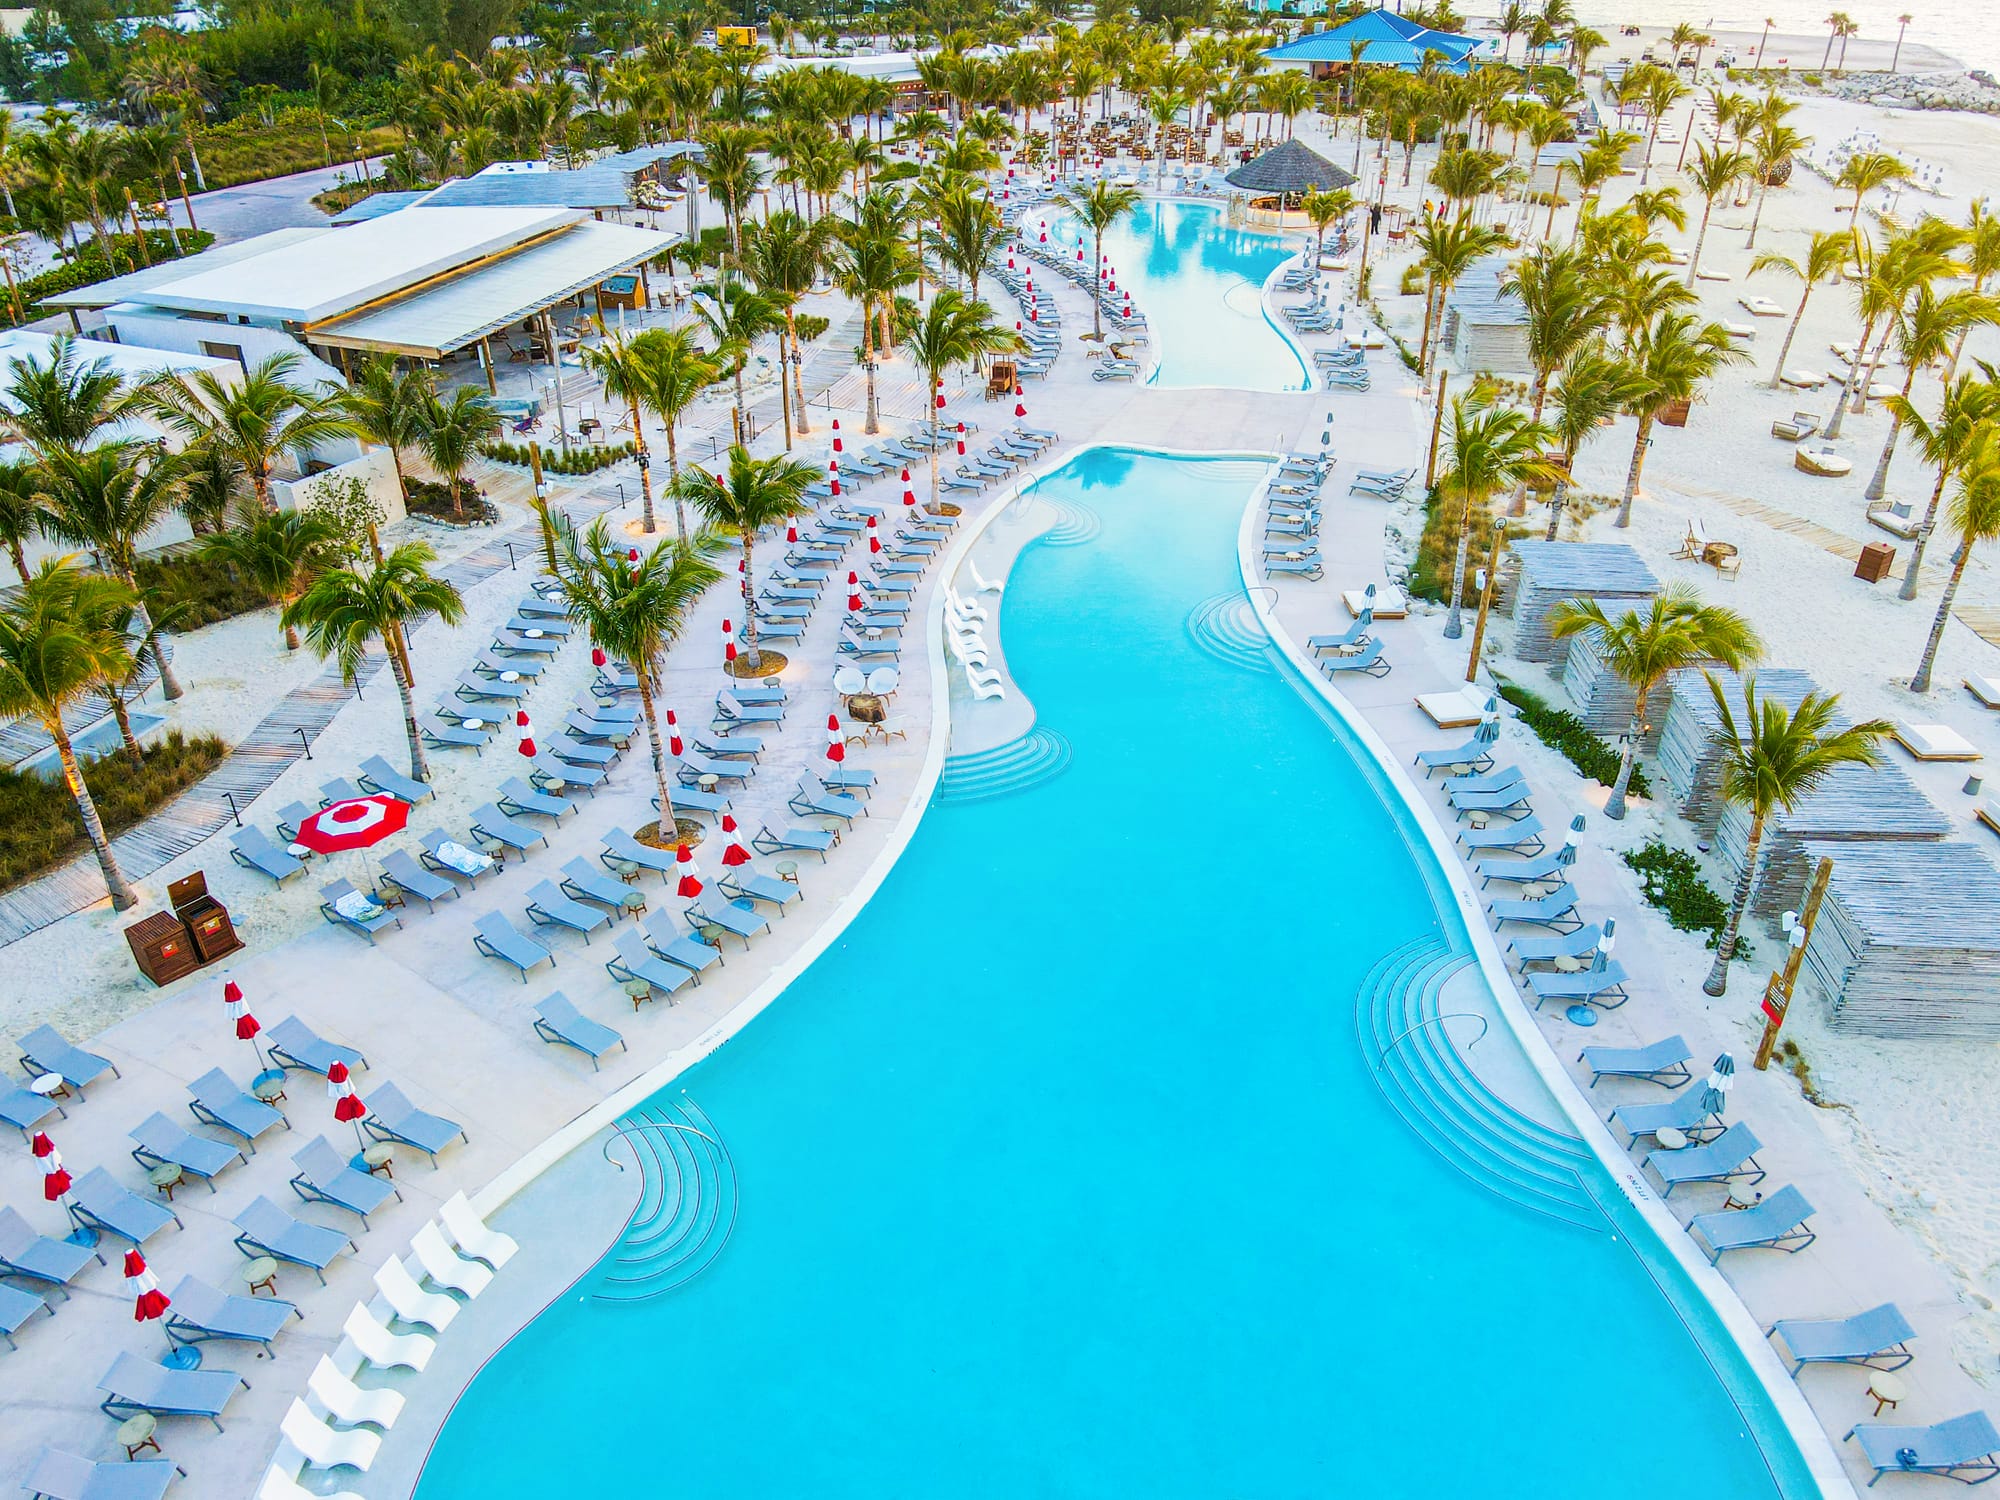 Pools at Bimini Beach Club in the Bahamas